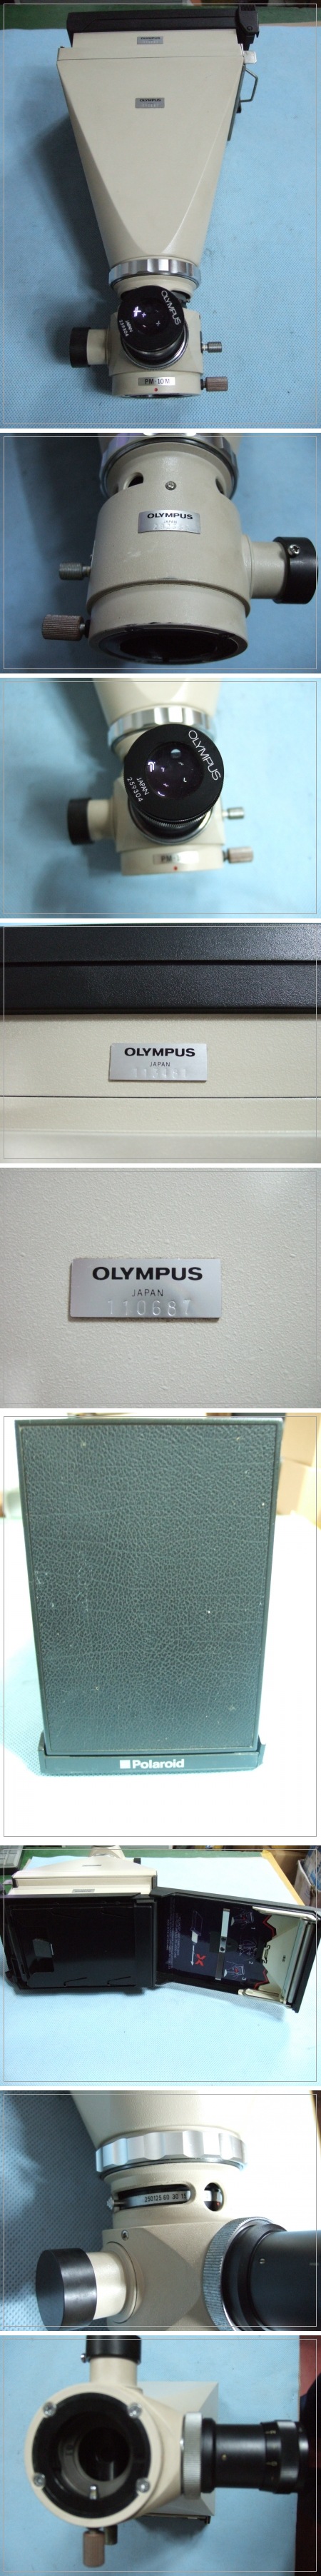 OLYMPUS LENS-2.jpg